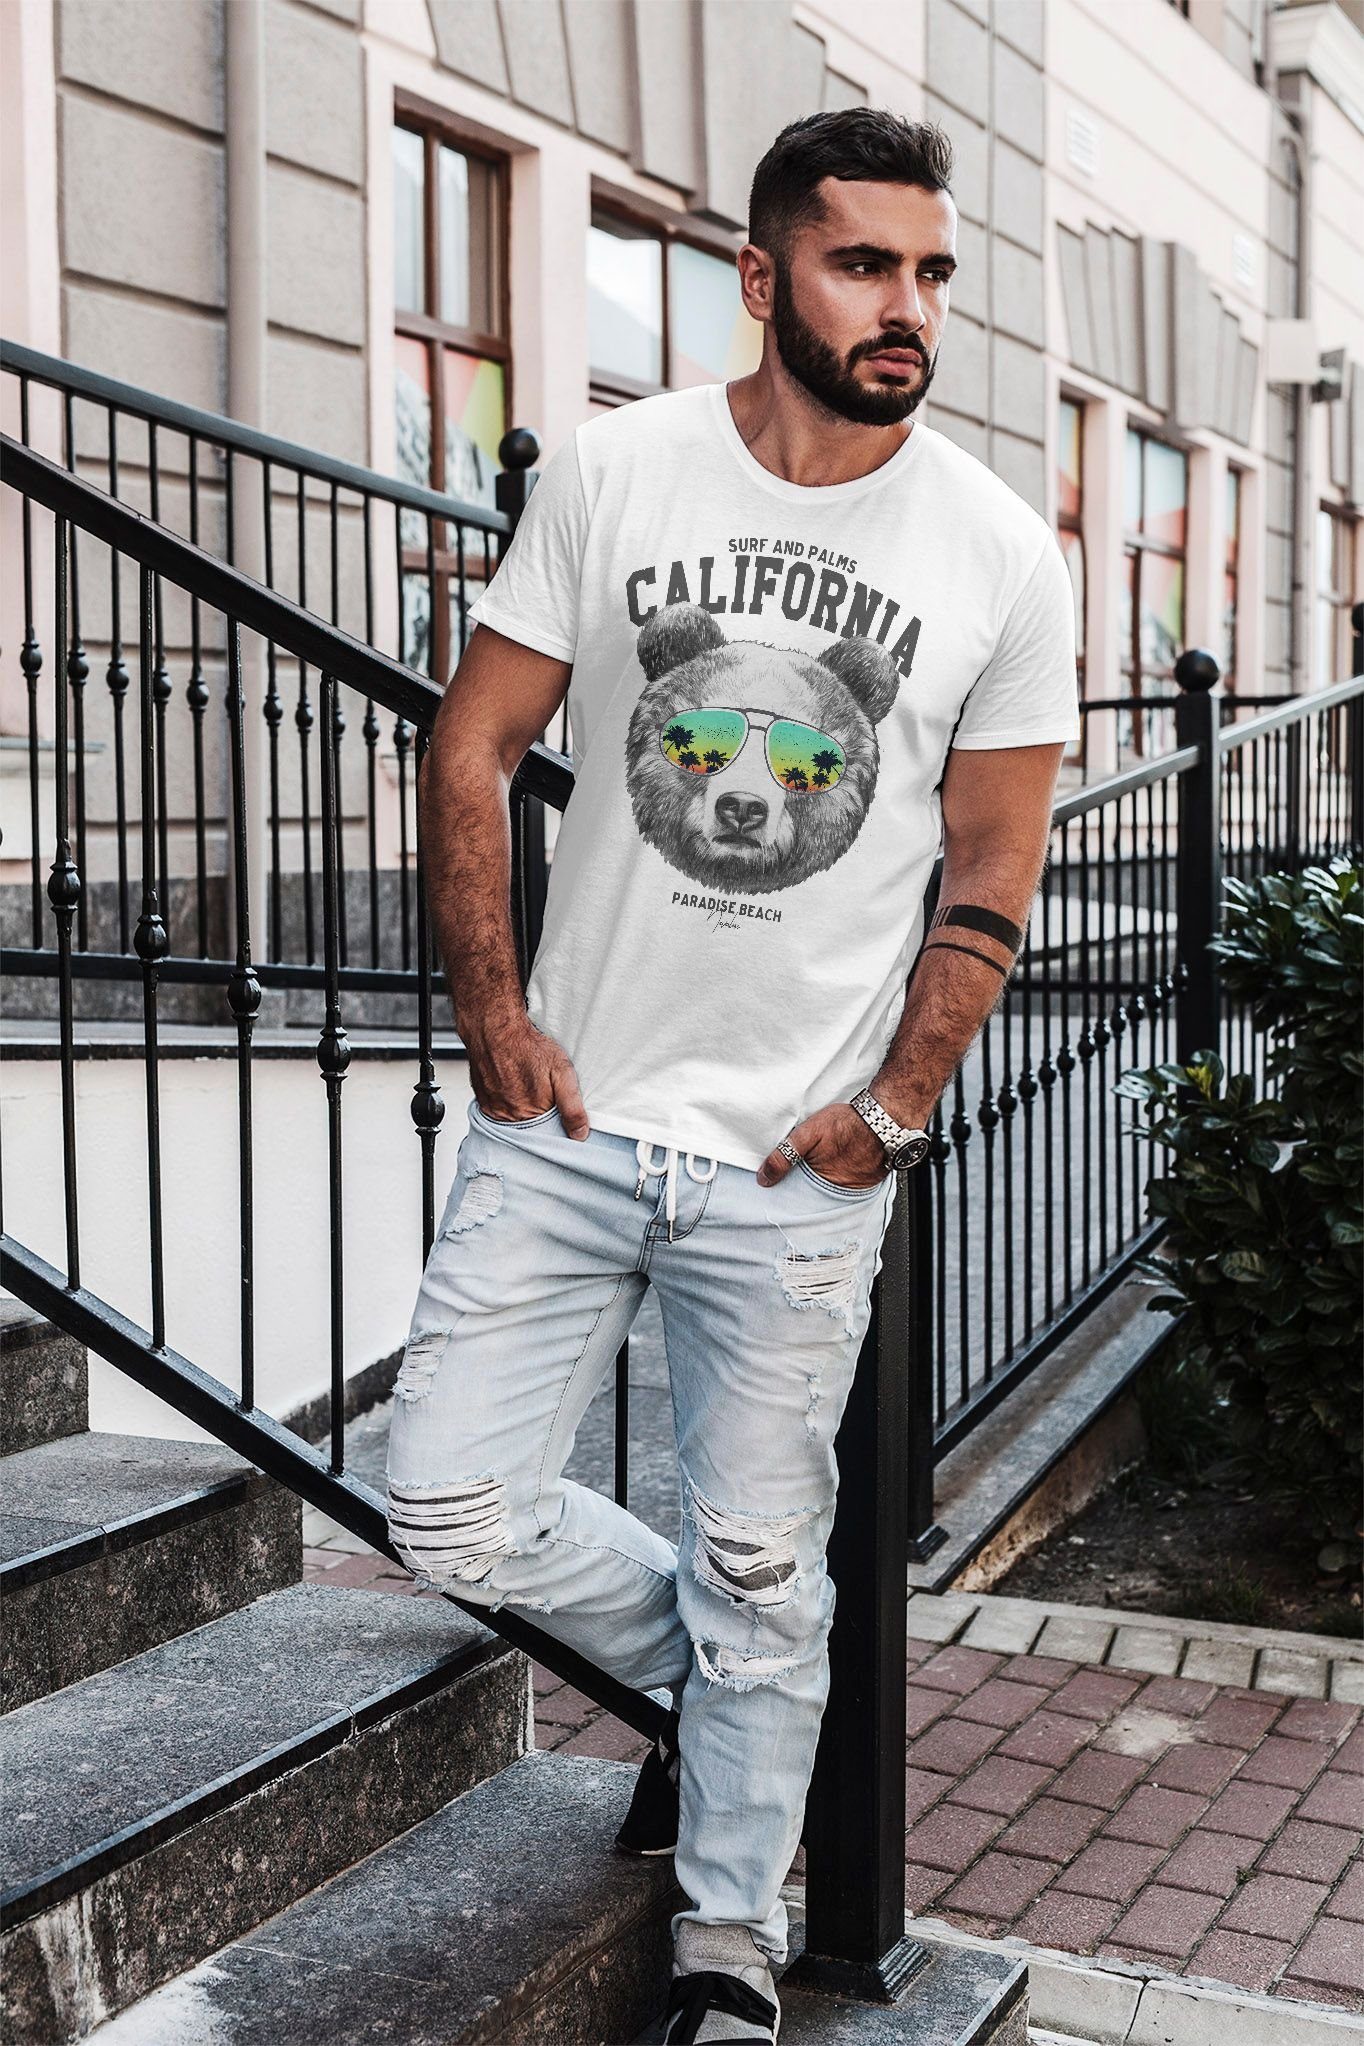 weiß Slim Summer T-Shirt Neverless® Fit Sonnenbrille Bear mit Print-Shirt Neverless Herren Löwe California Palmen Print Bär